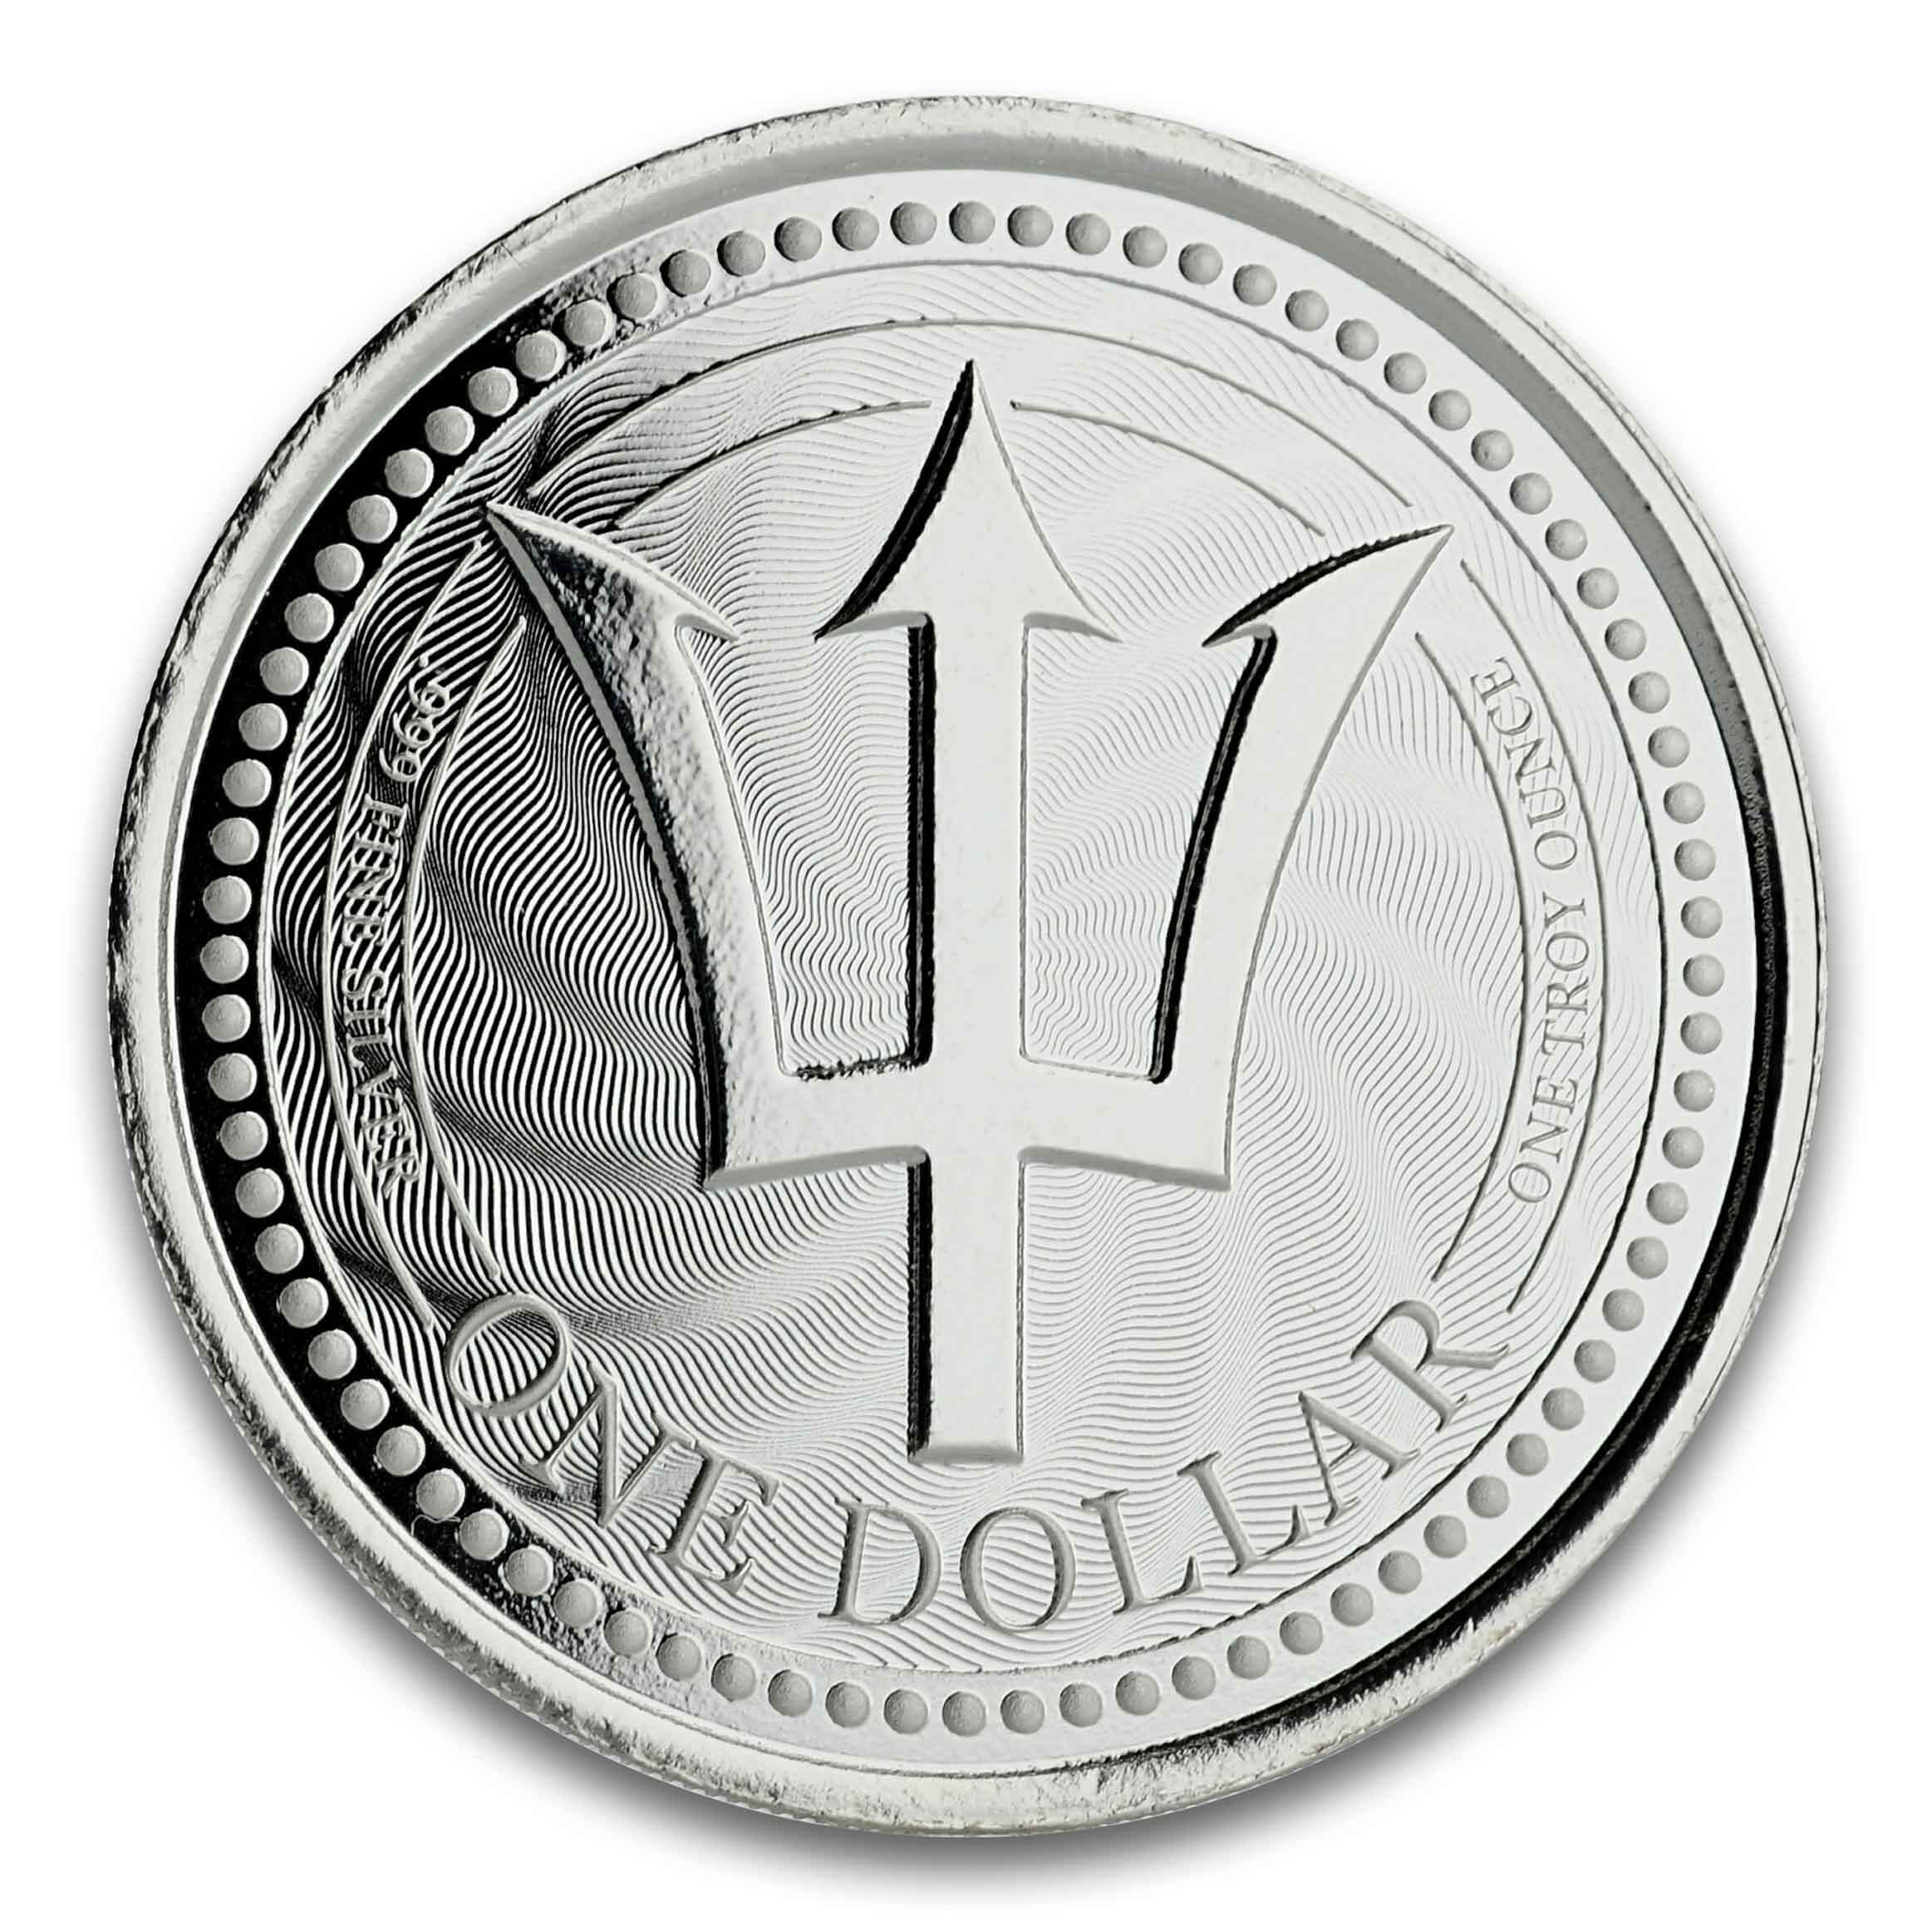 Barbados Trident Silver - 1 oz Silver Coin